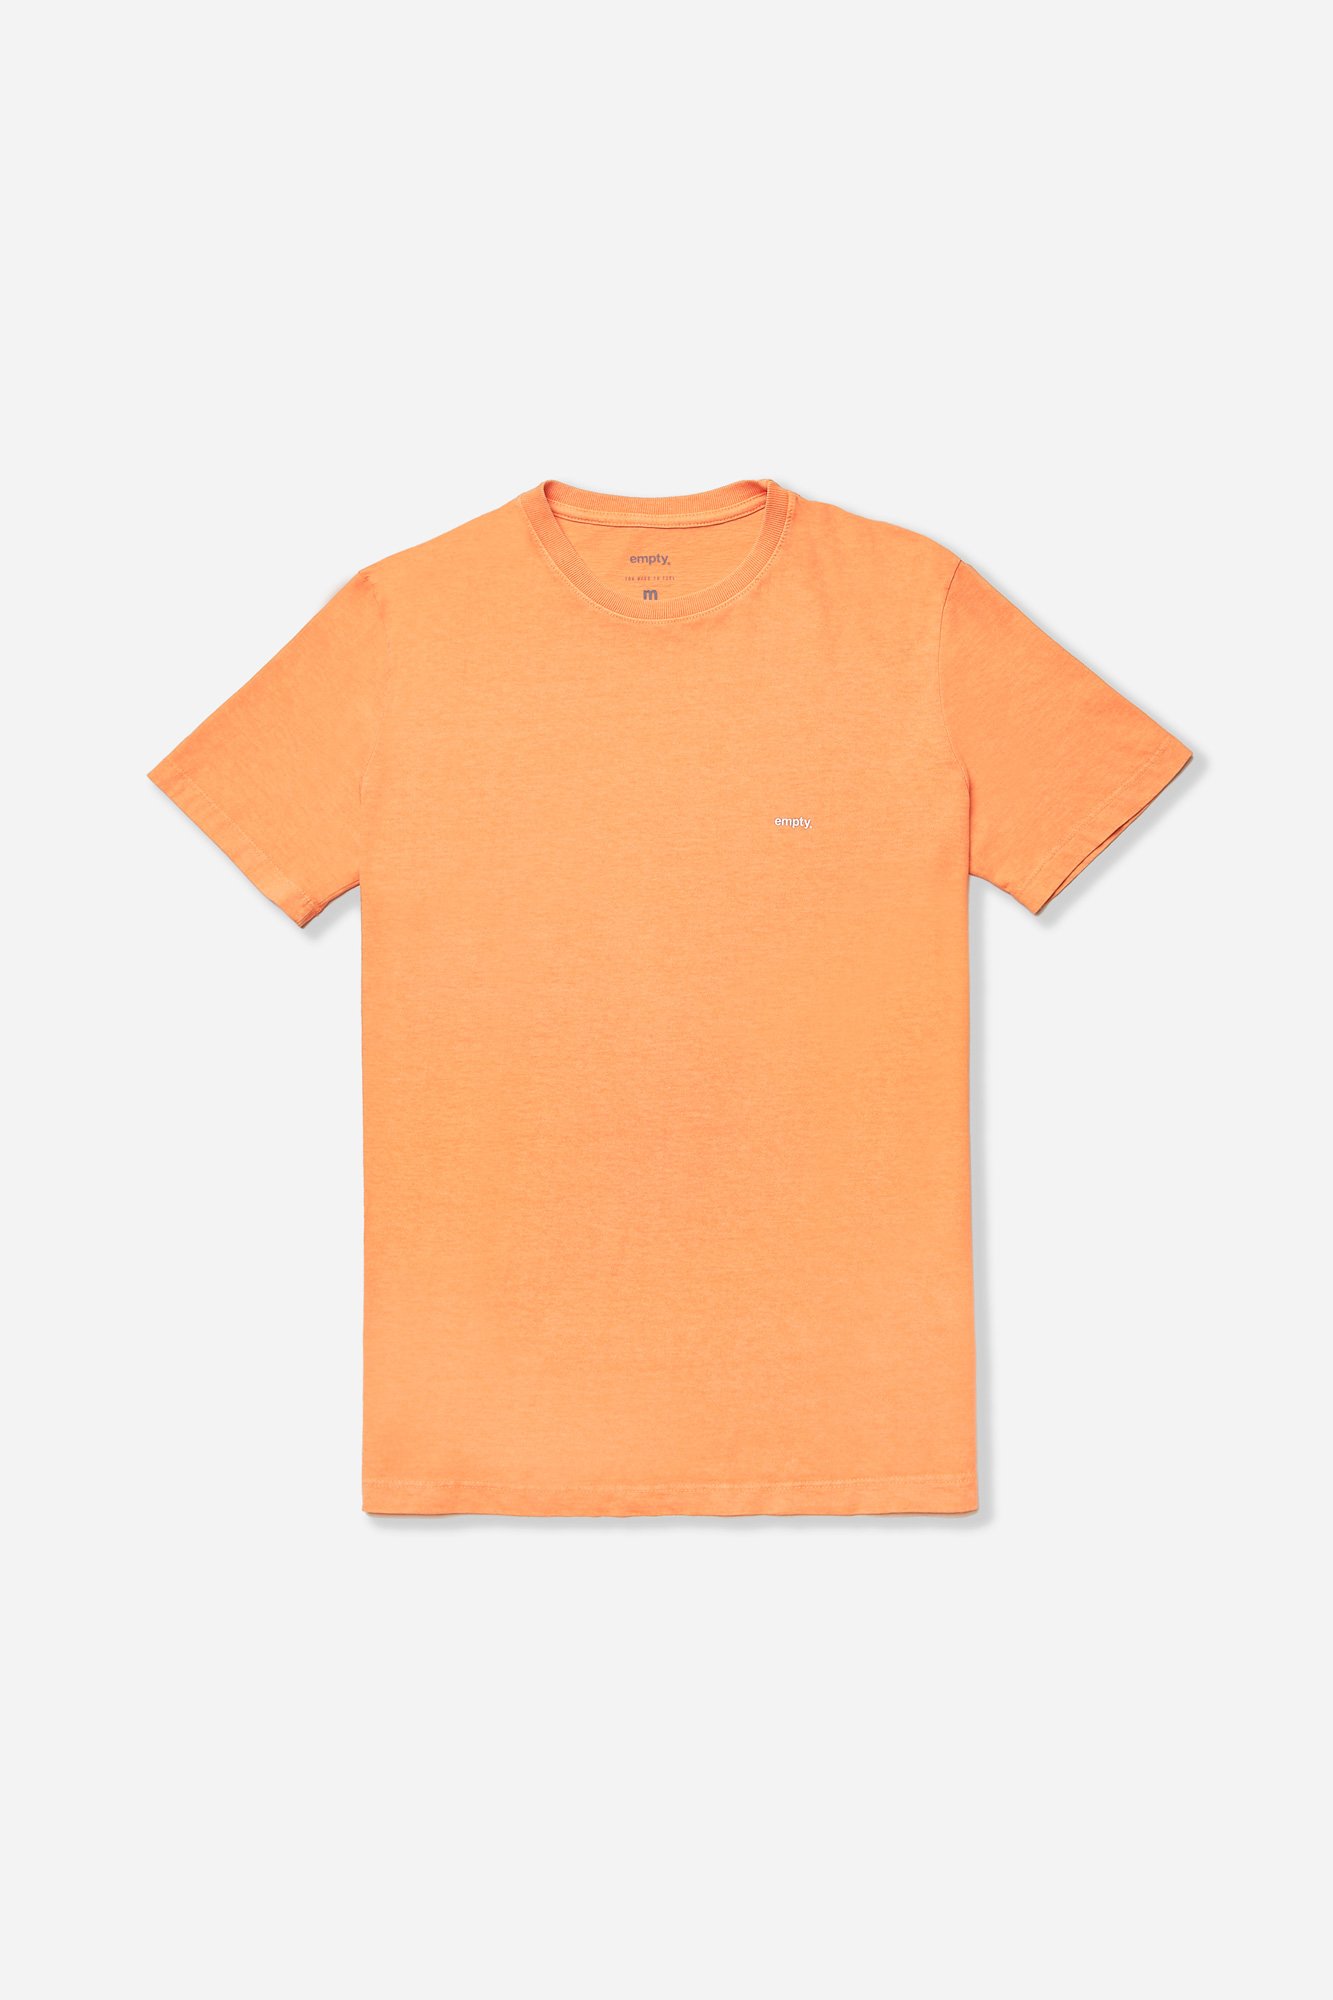 06 camiseta emptyco laranja